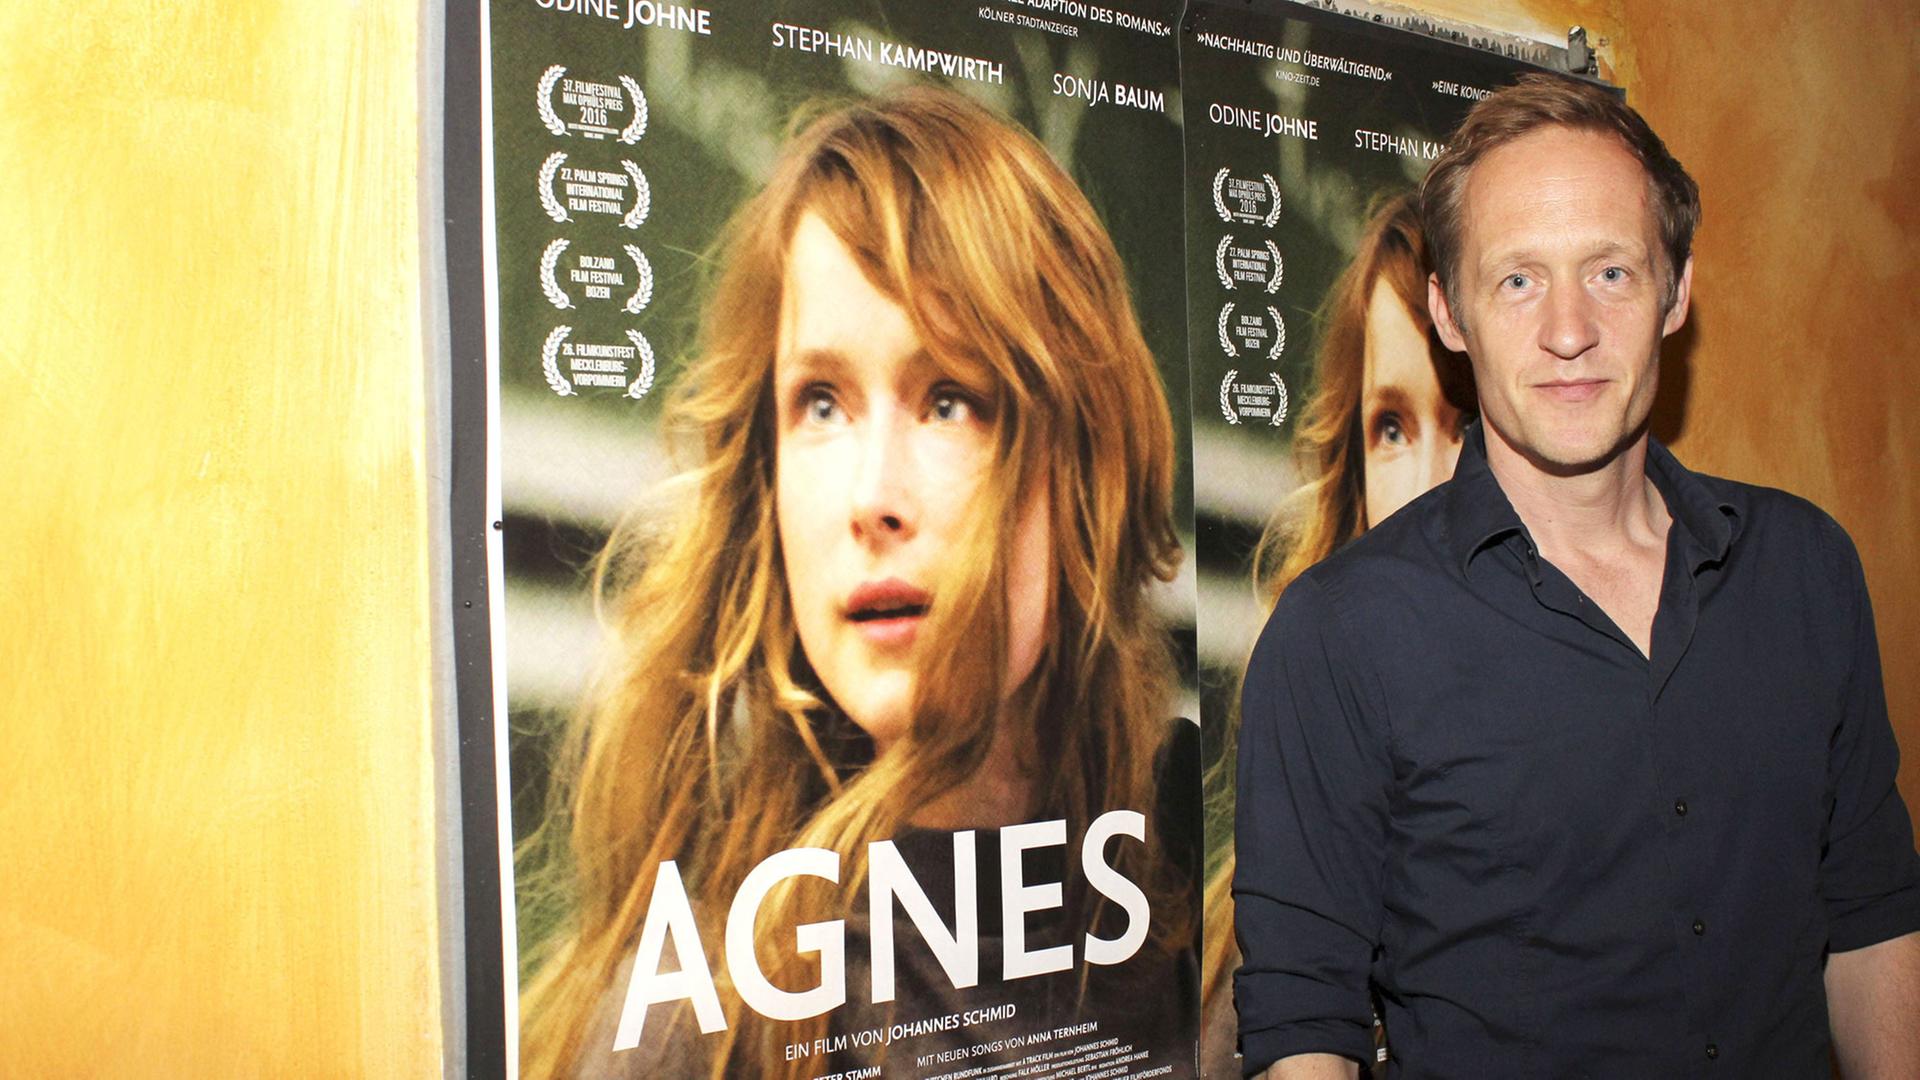 Der Schauspieler Stephan Kampwirth steht vor dem Filmplakat bei der Premiere des Kinofilms "Agnes" im Abaton Kino in Hamburg.